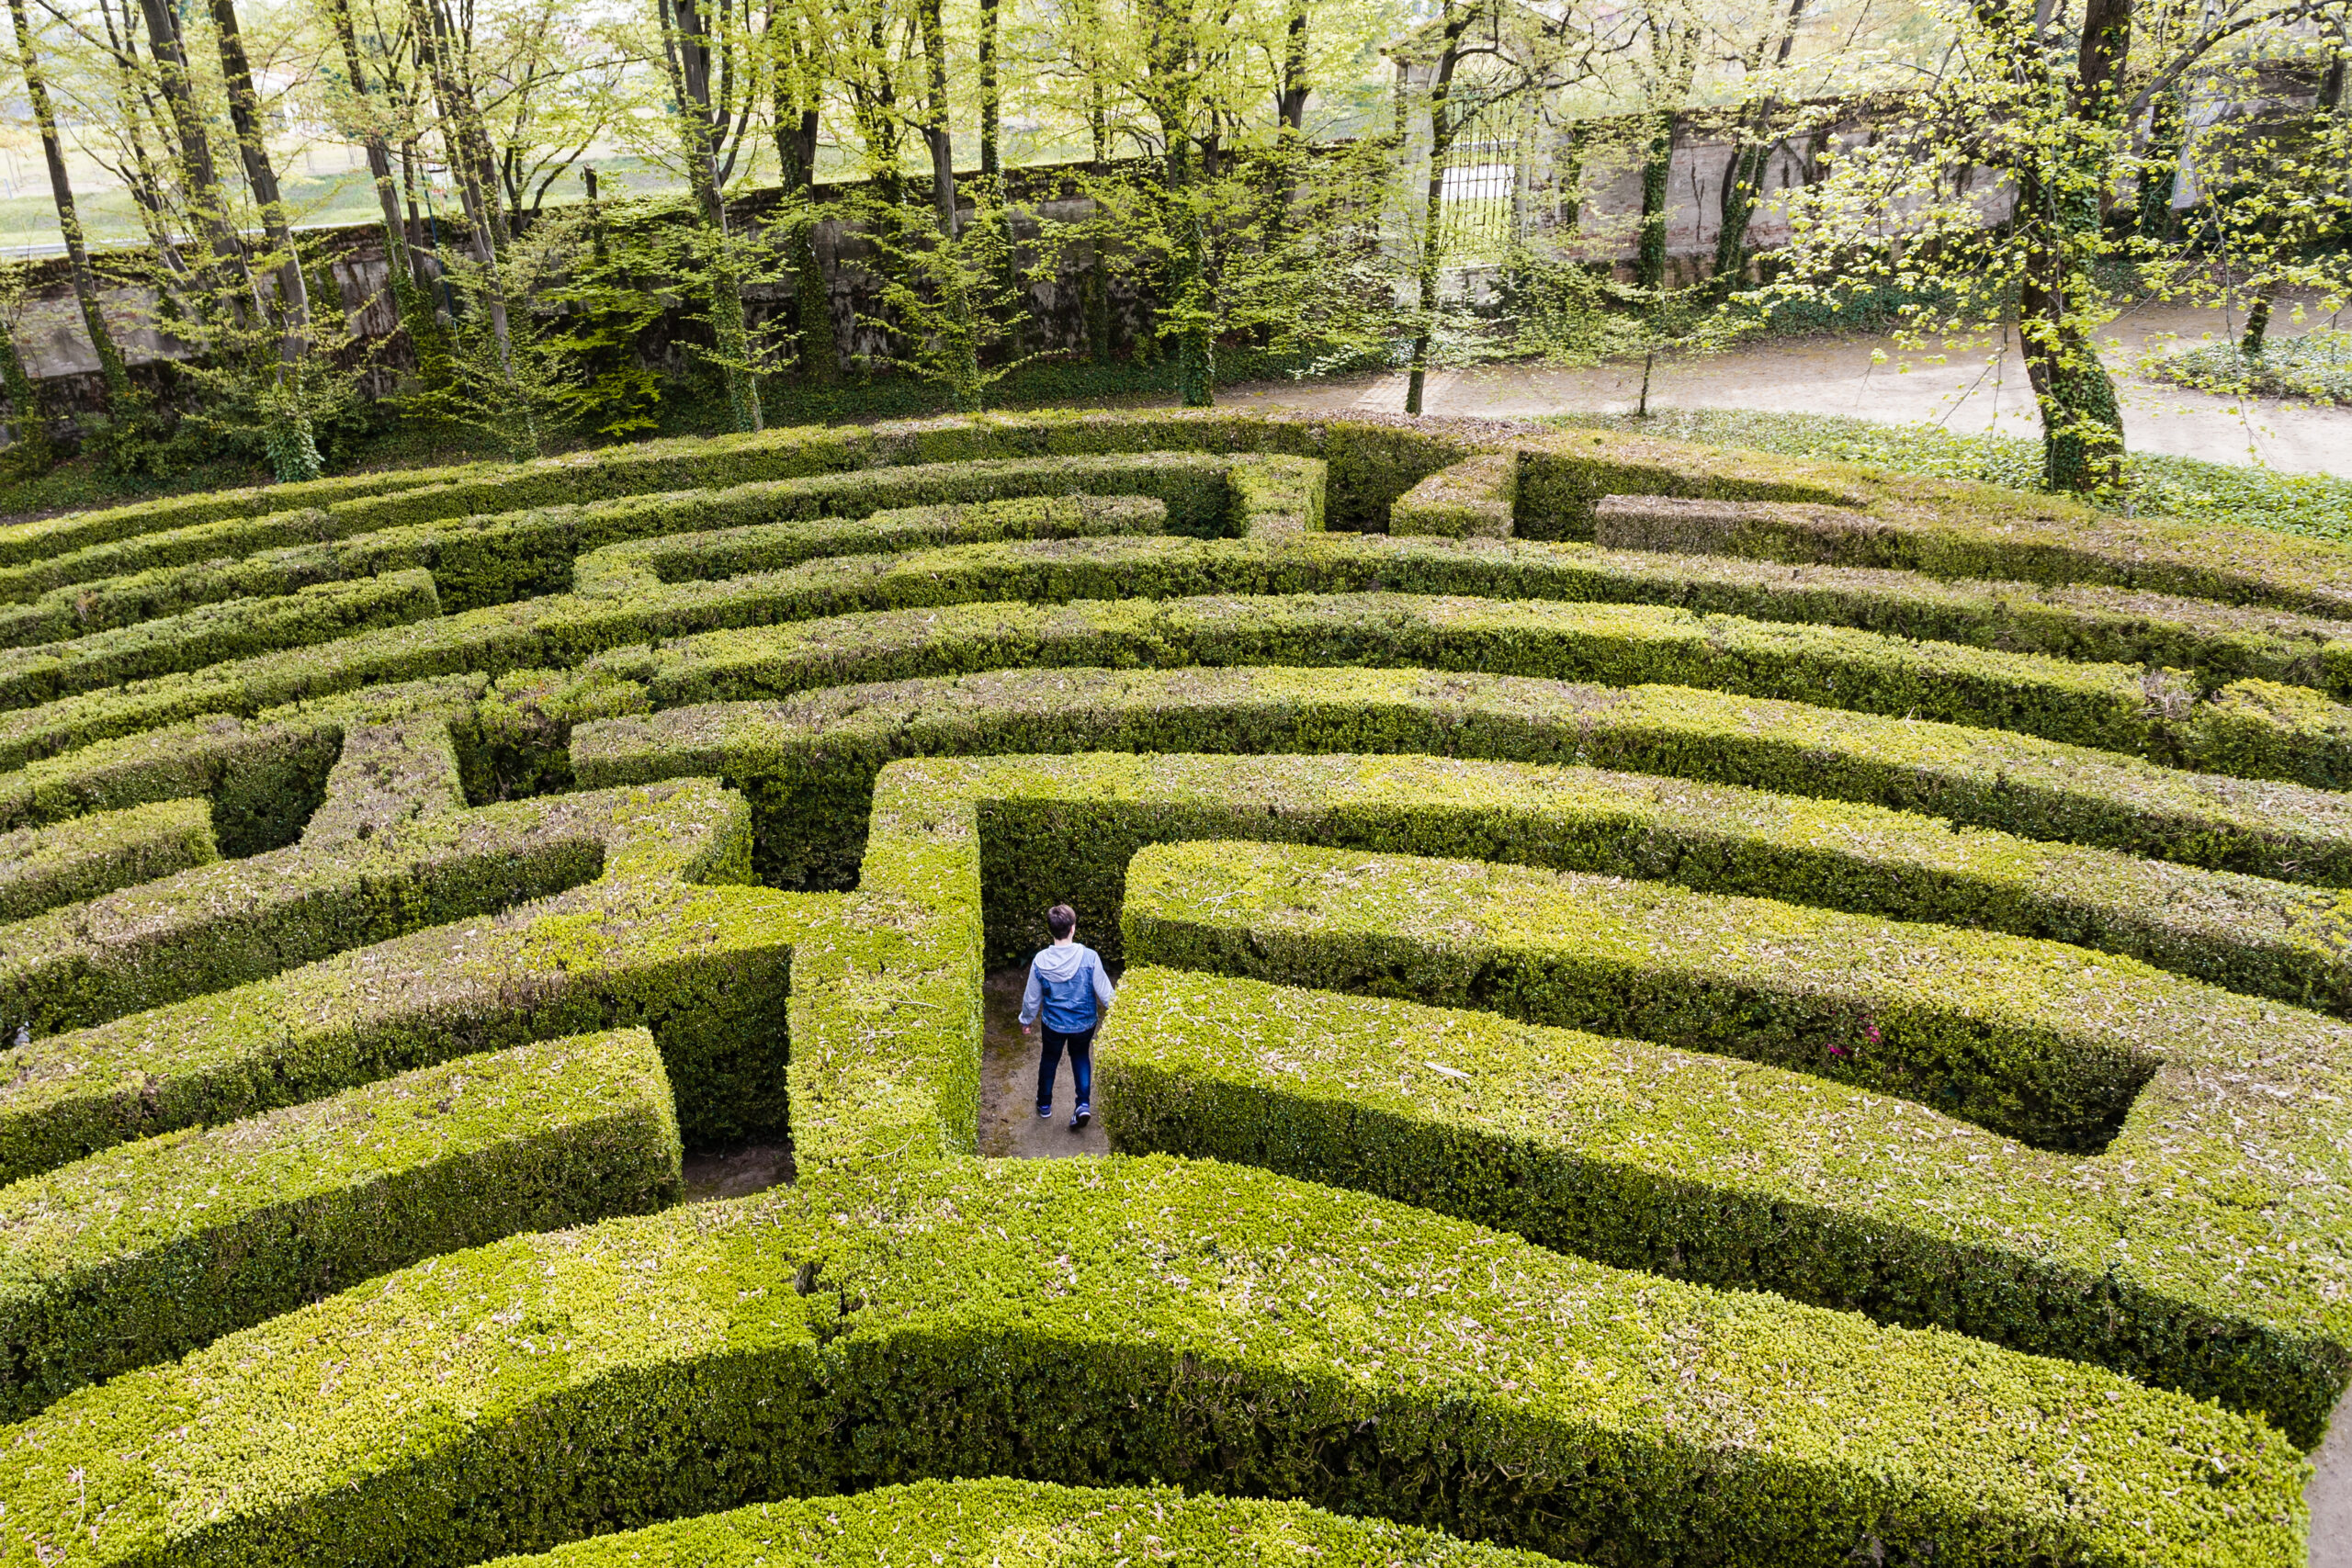 person lost in a maze